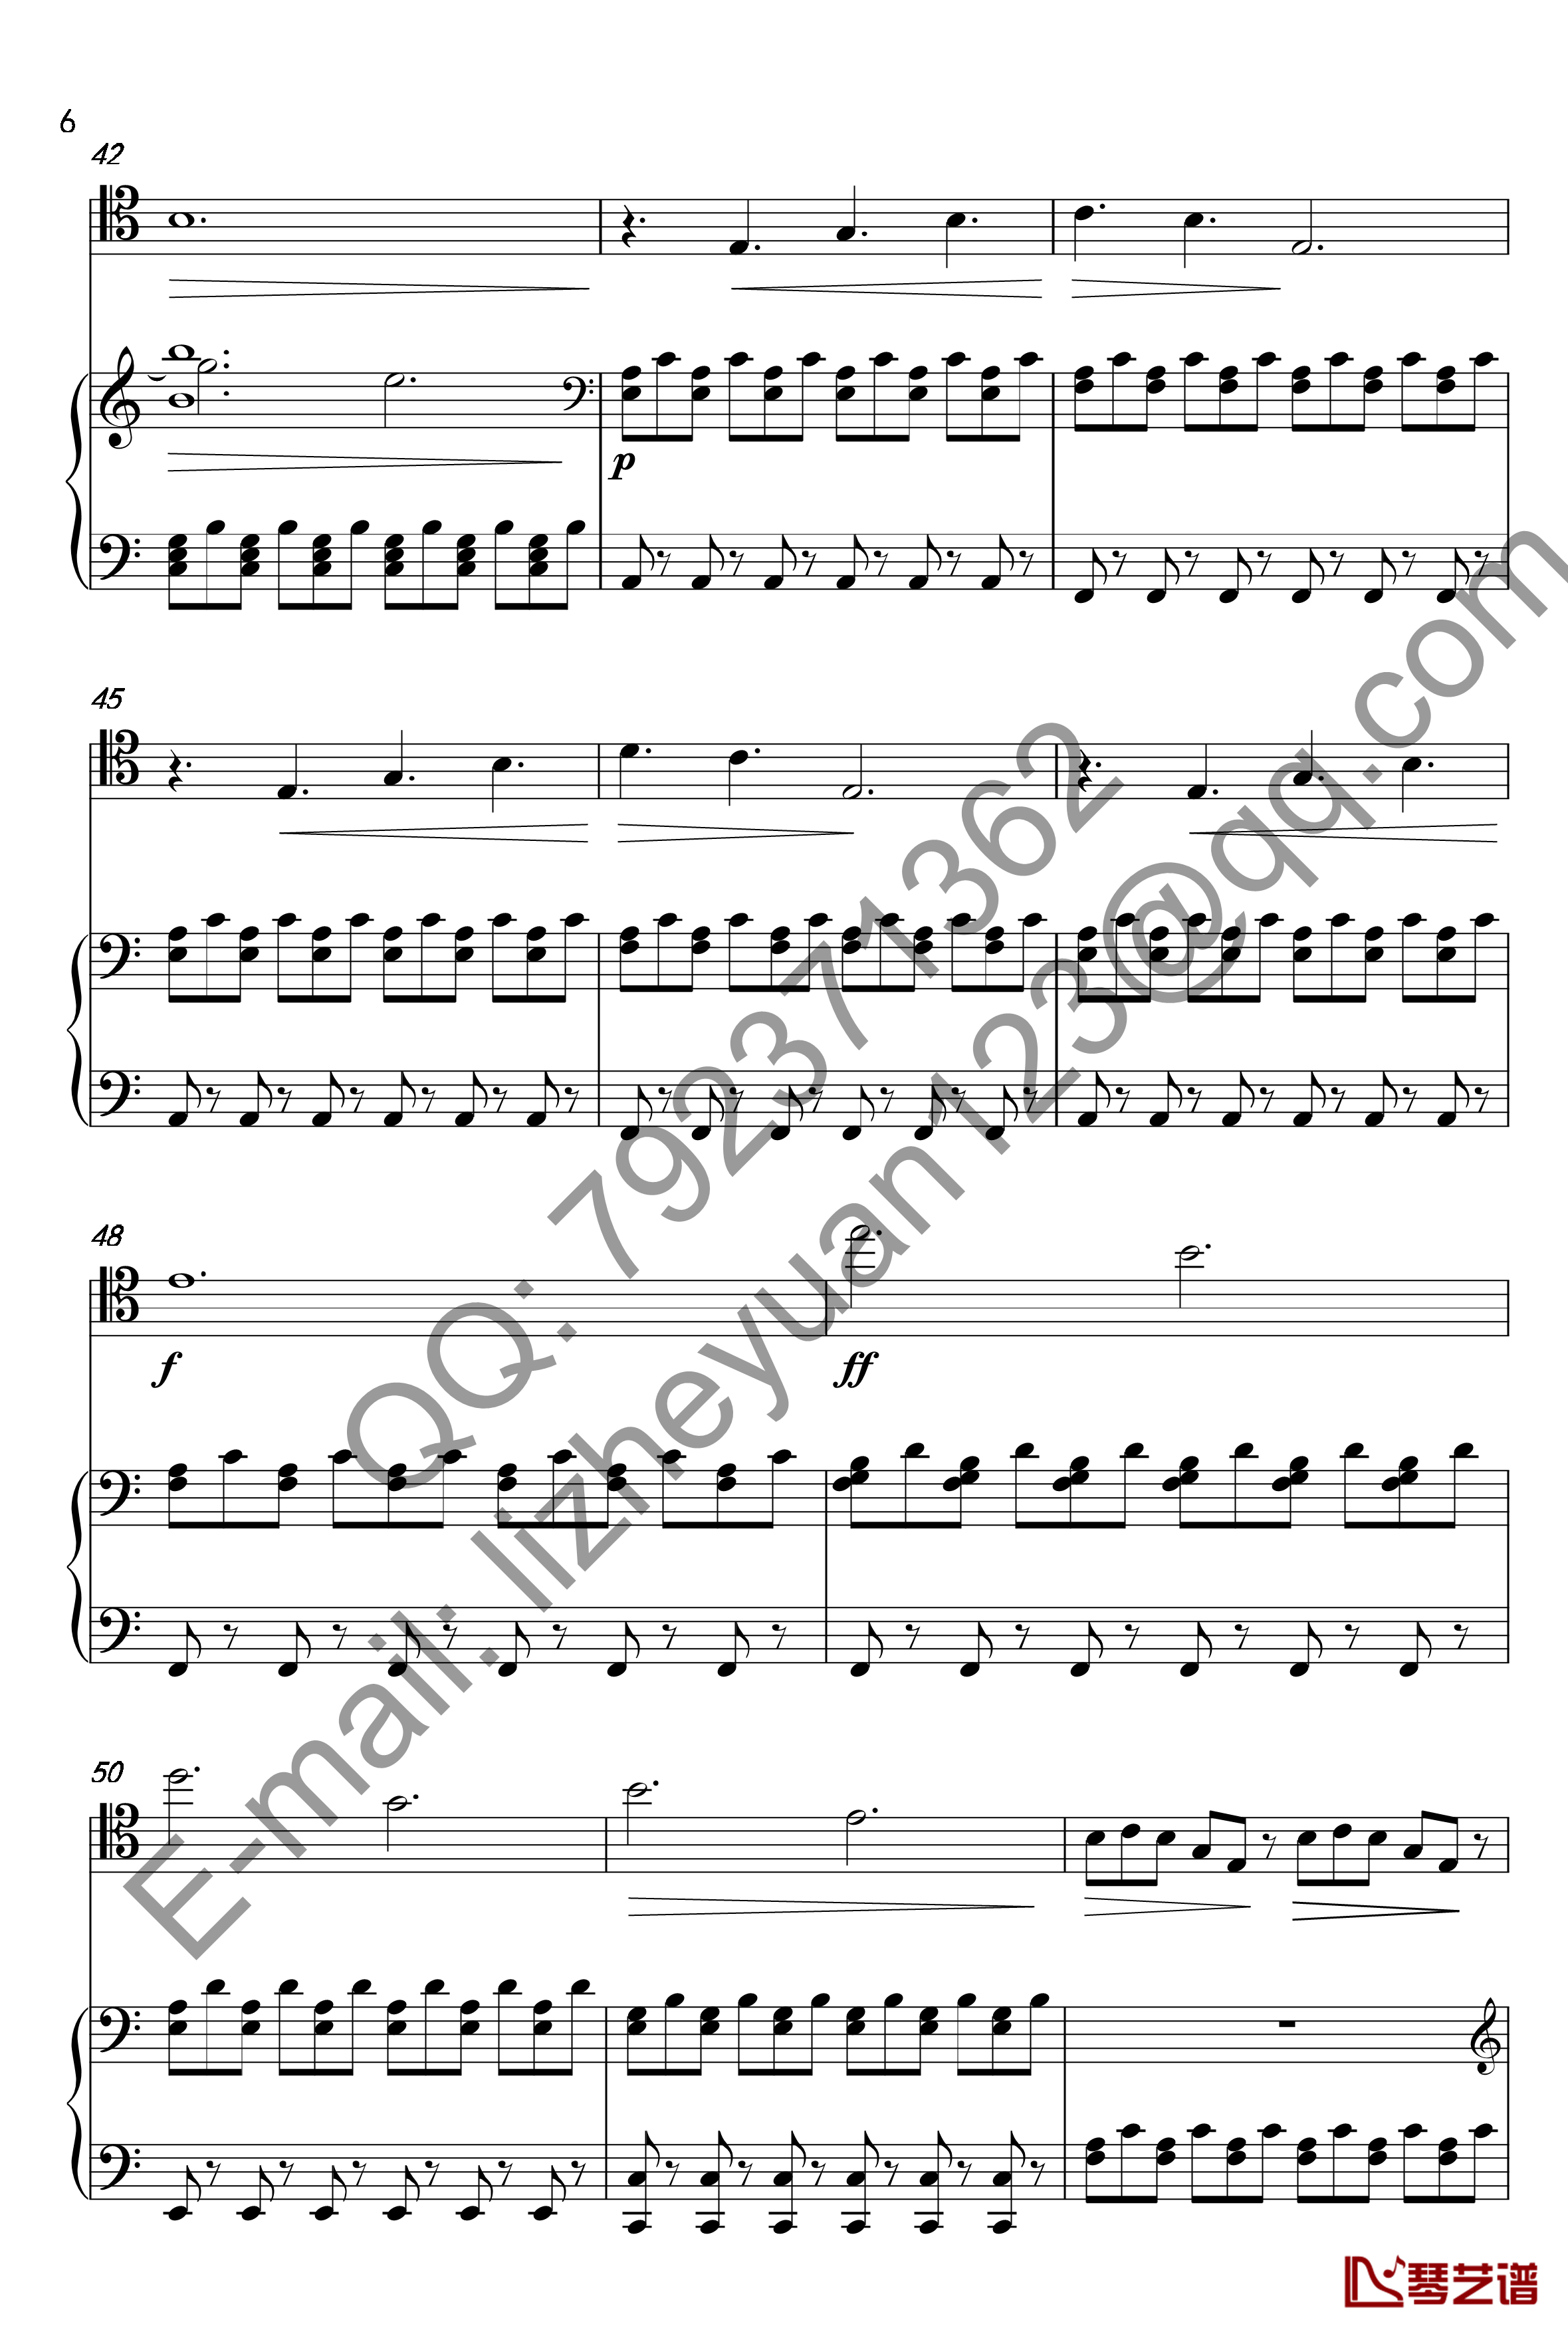 唐顿庄园主题曲钢琴谱-钢琴+大提琴-唐顿庄园6